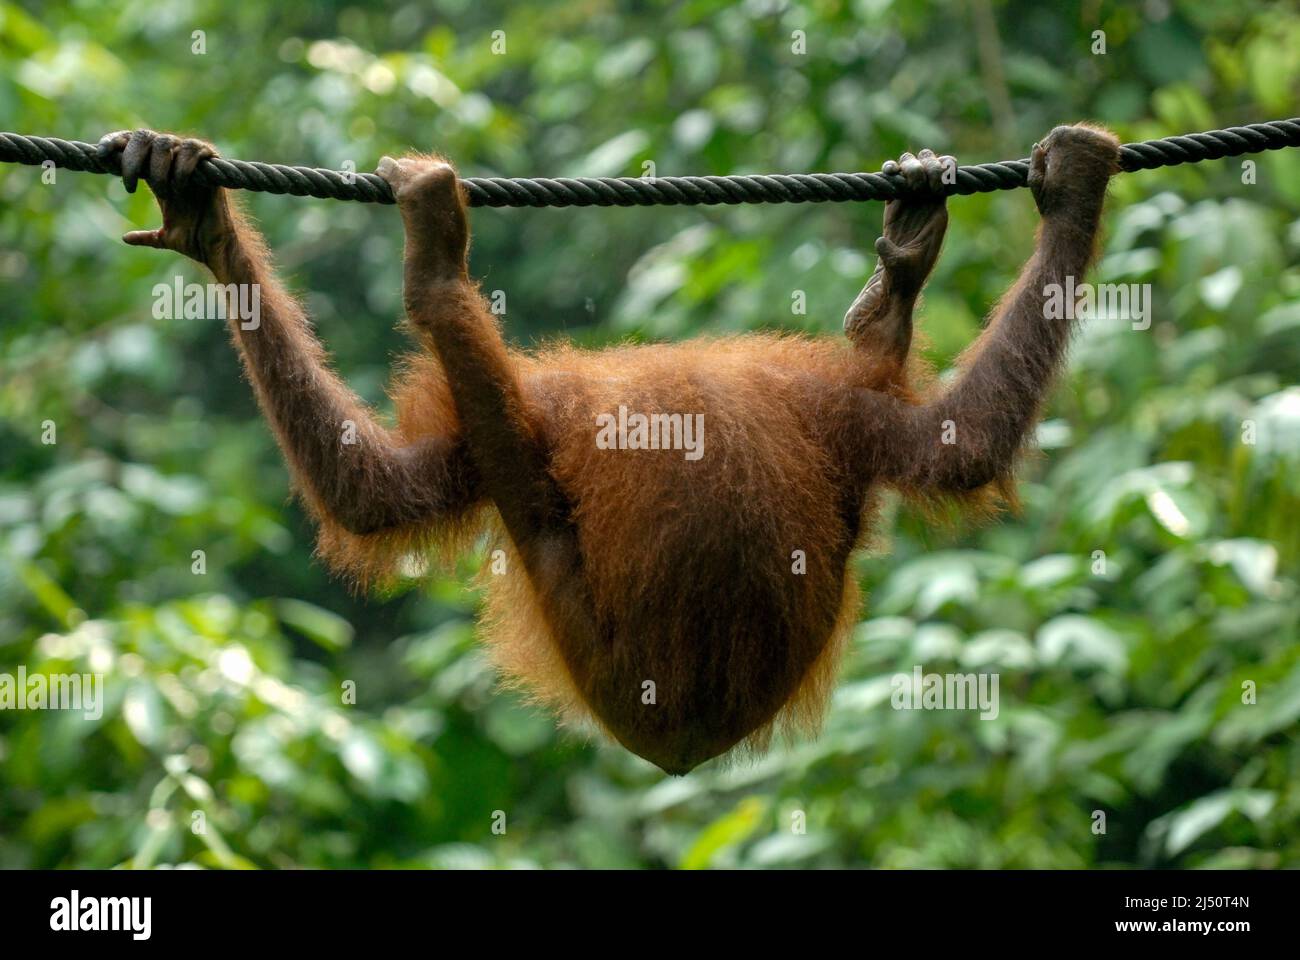 Orangután jugando en el Centro de Rehabilitación de Orangutan Sepilok. Foto de stock